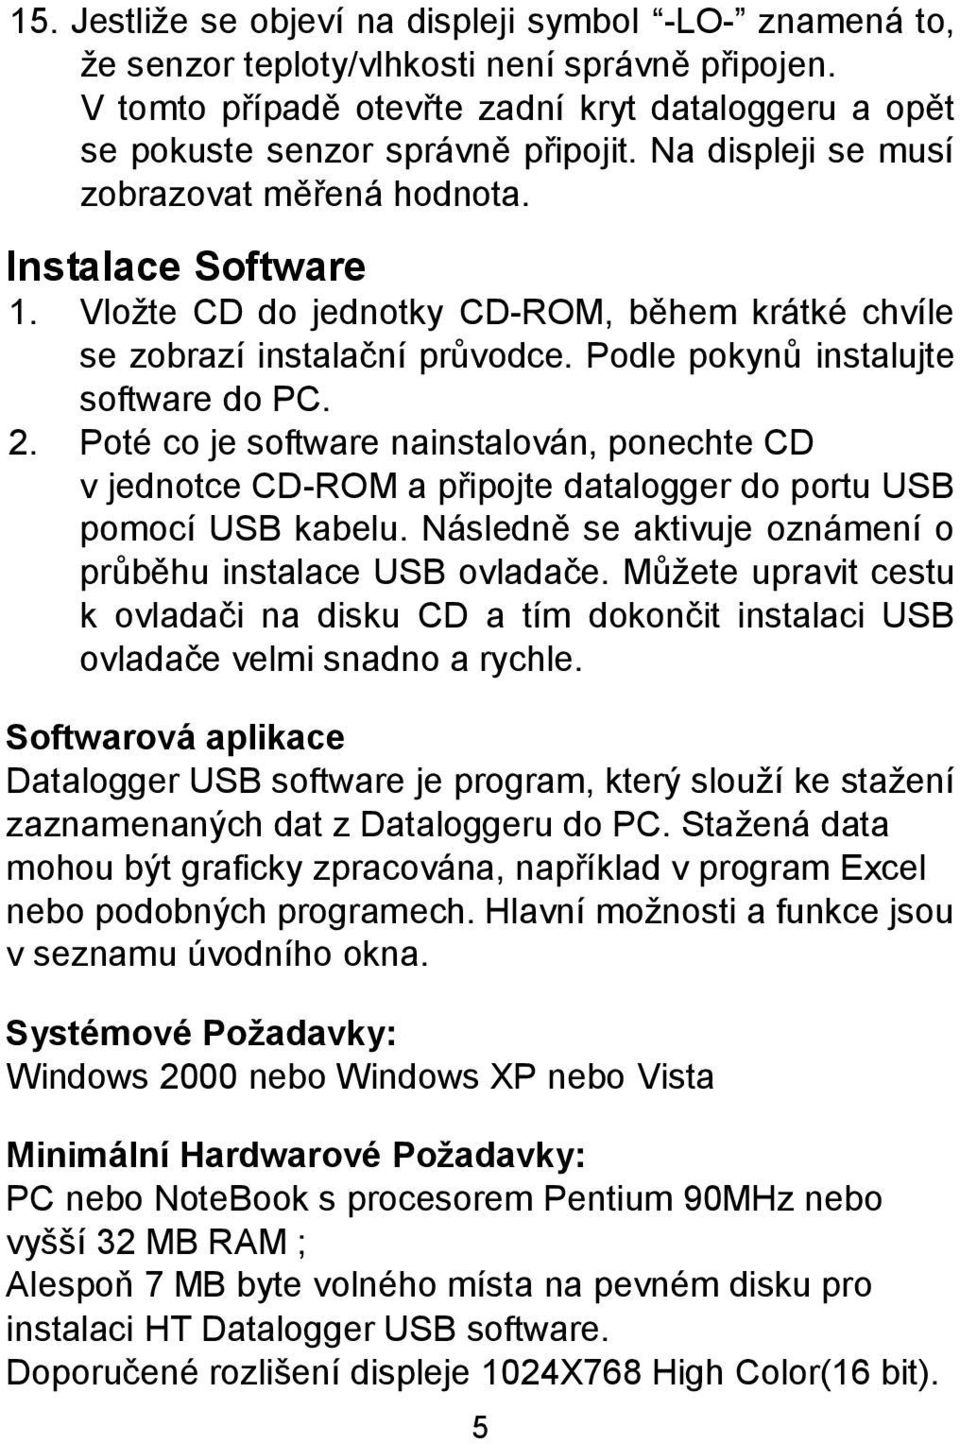 Poté co je software nainstalován, ponechte CD v jednotce CD-ROM a připojte datalogger do portu USB pomocí USB kabelu. Následně se aktivuje oznámení o průběhu instalace USB ovladače.